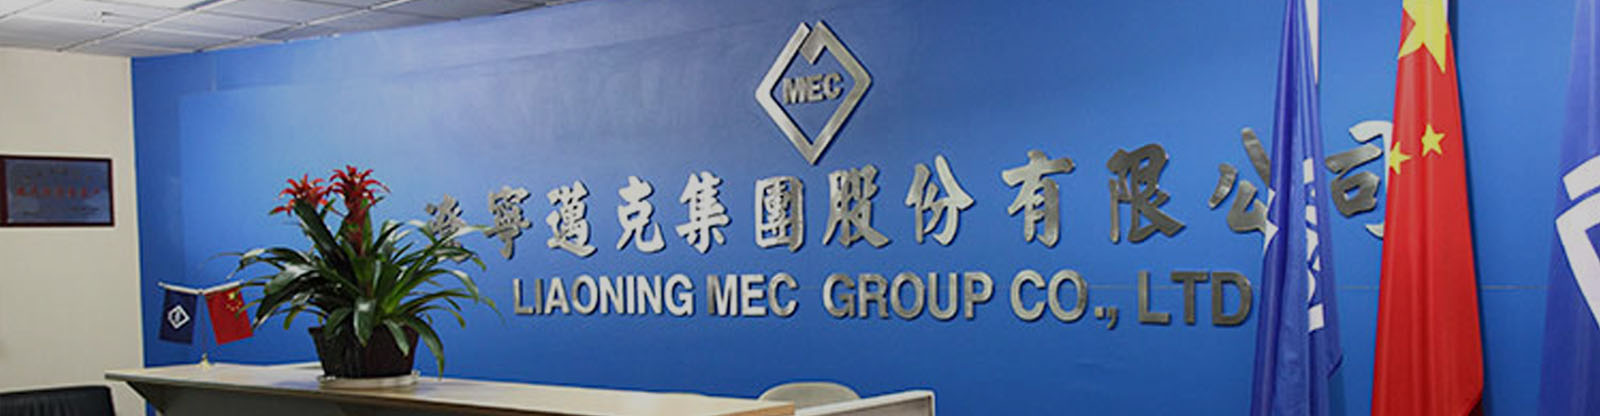 MEC Group